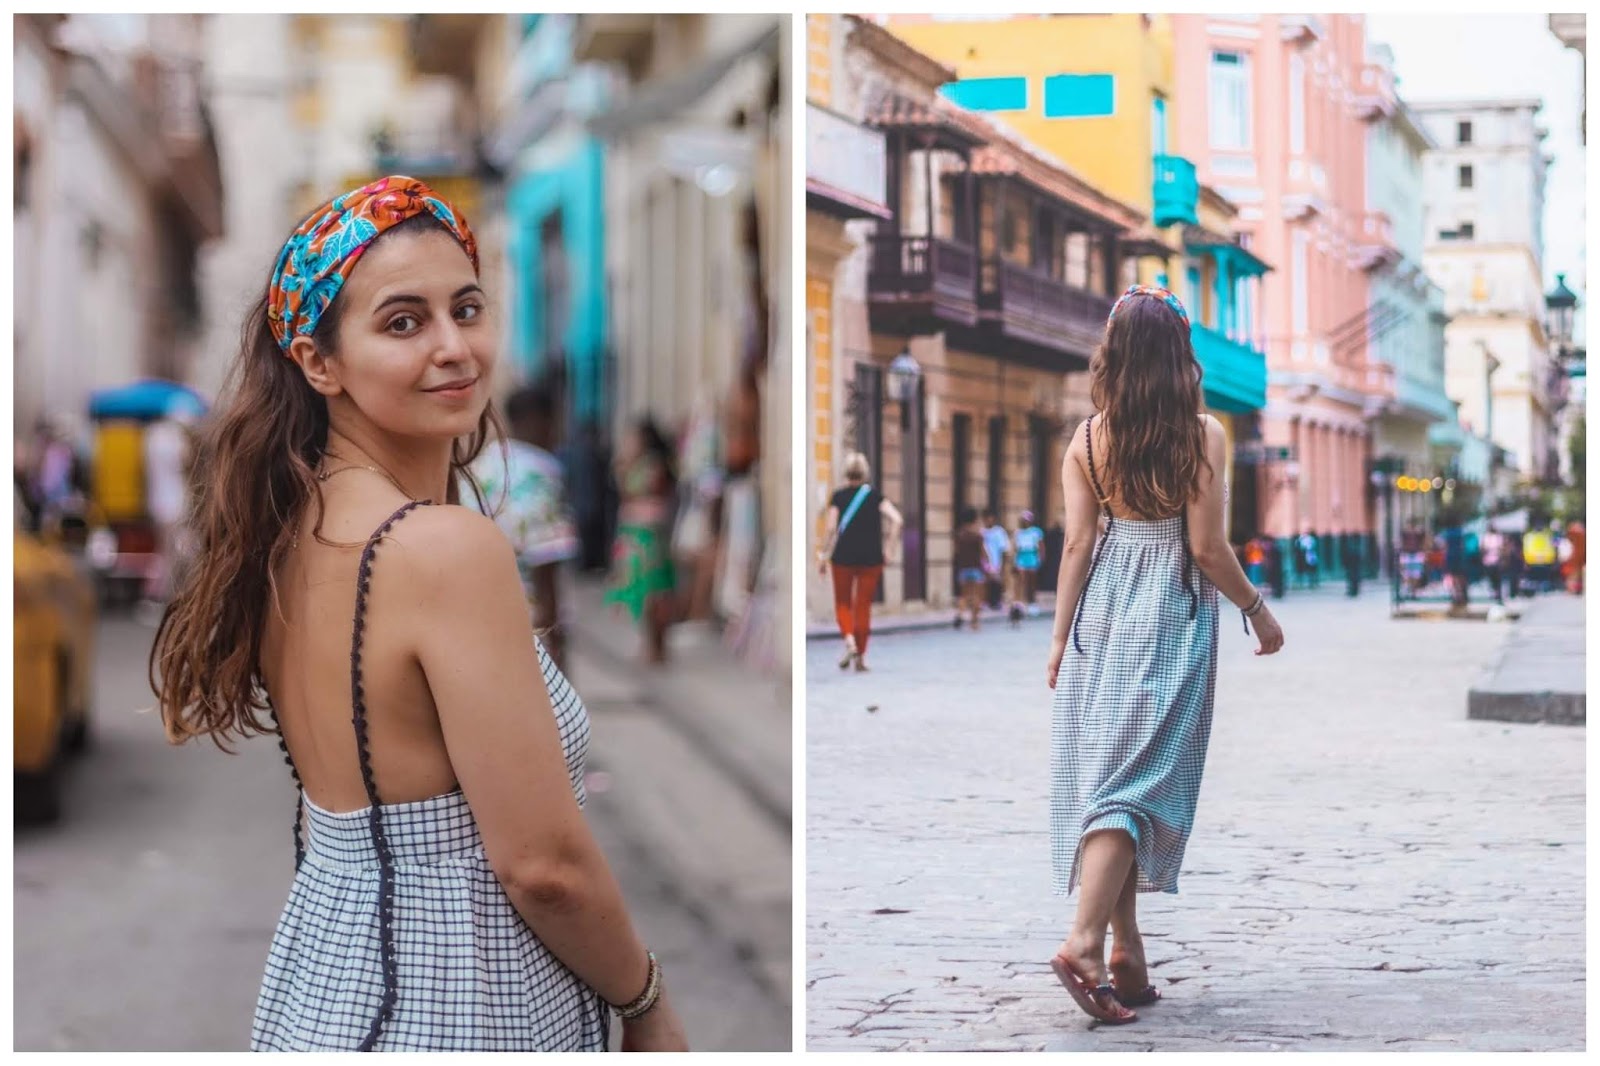 Outfits & Travel, Cuba Chronicles I - Havana ooh na-na